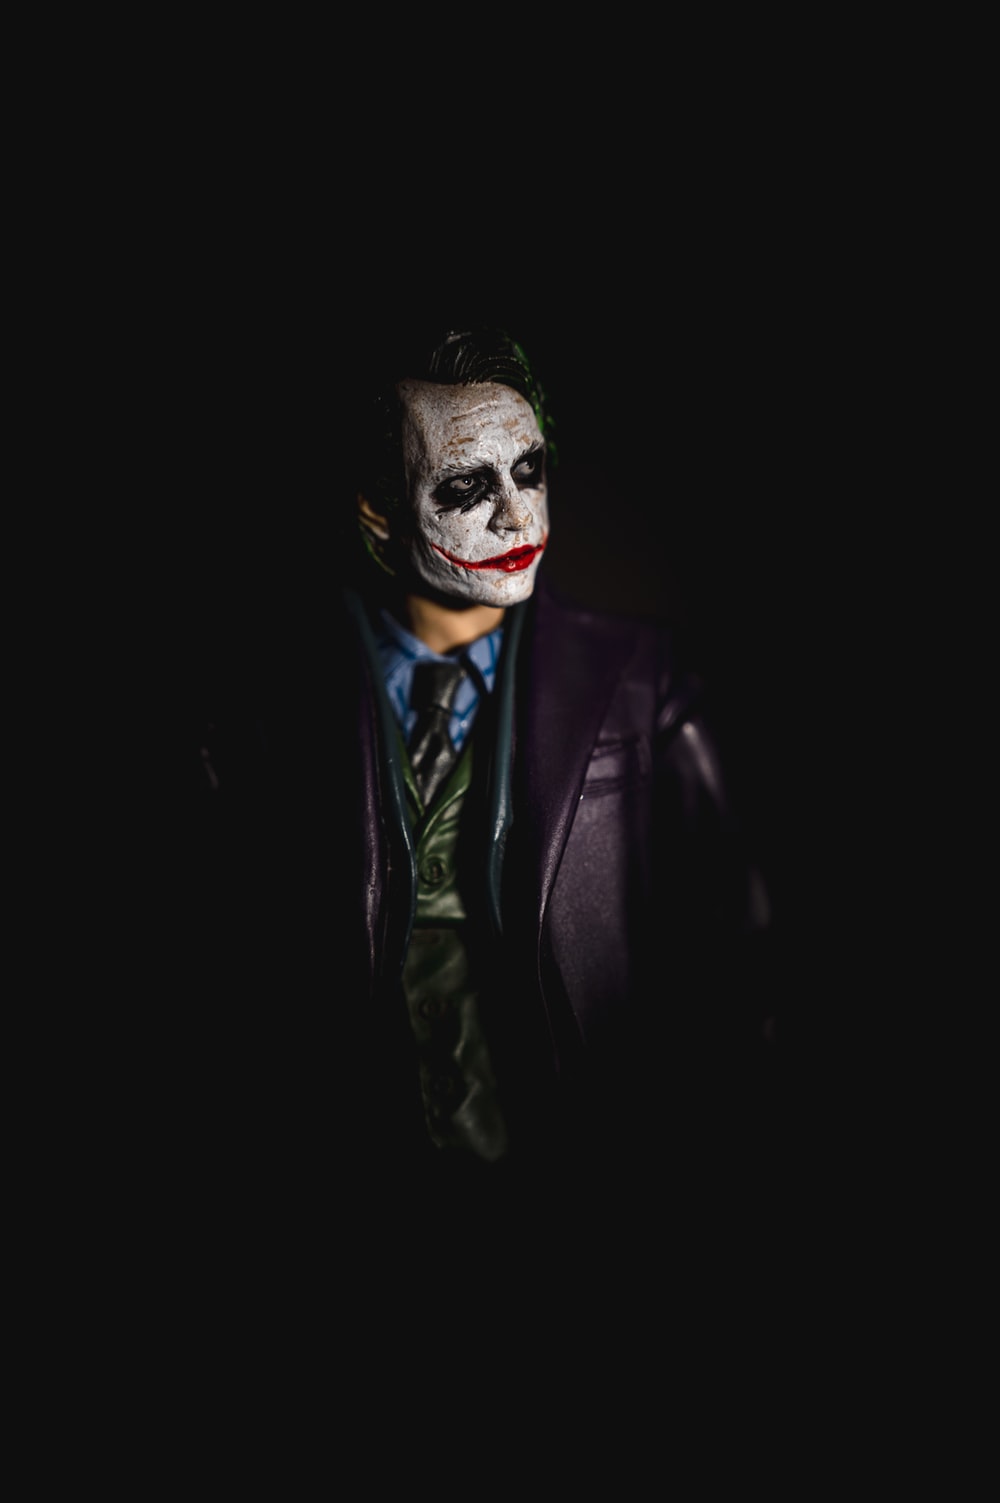 Joker Images - KibrisPDR